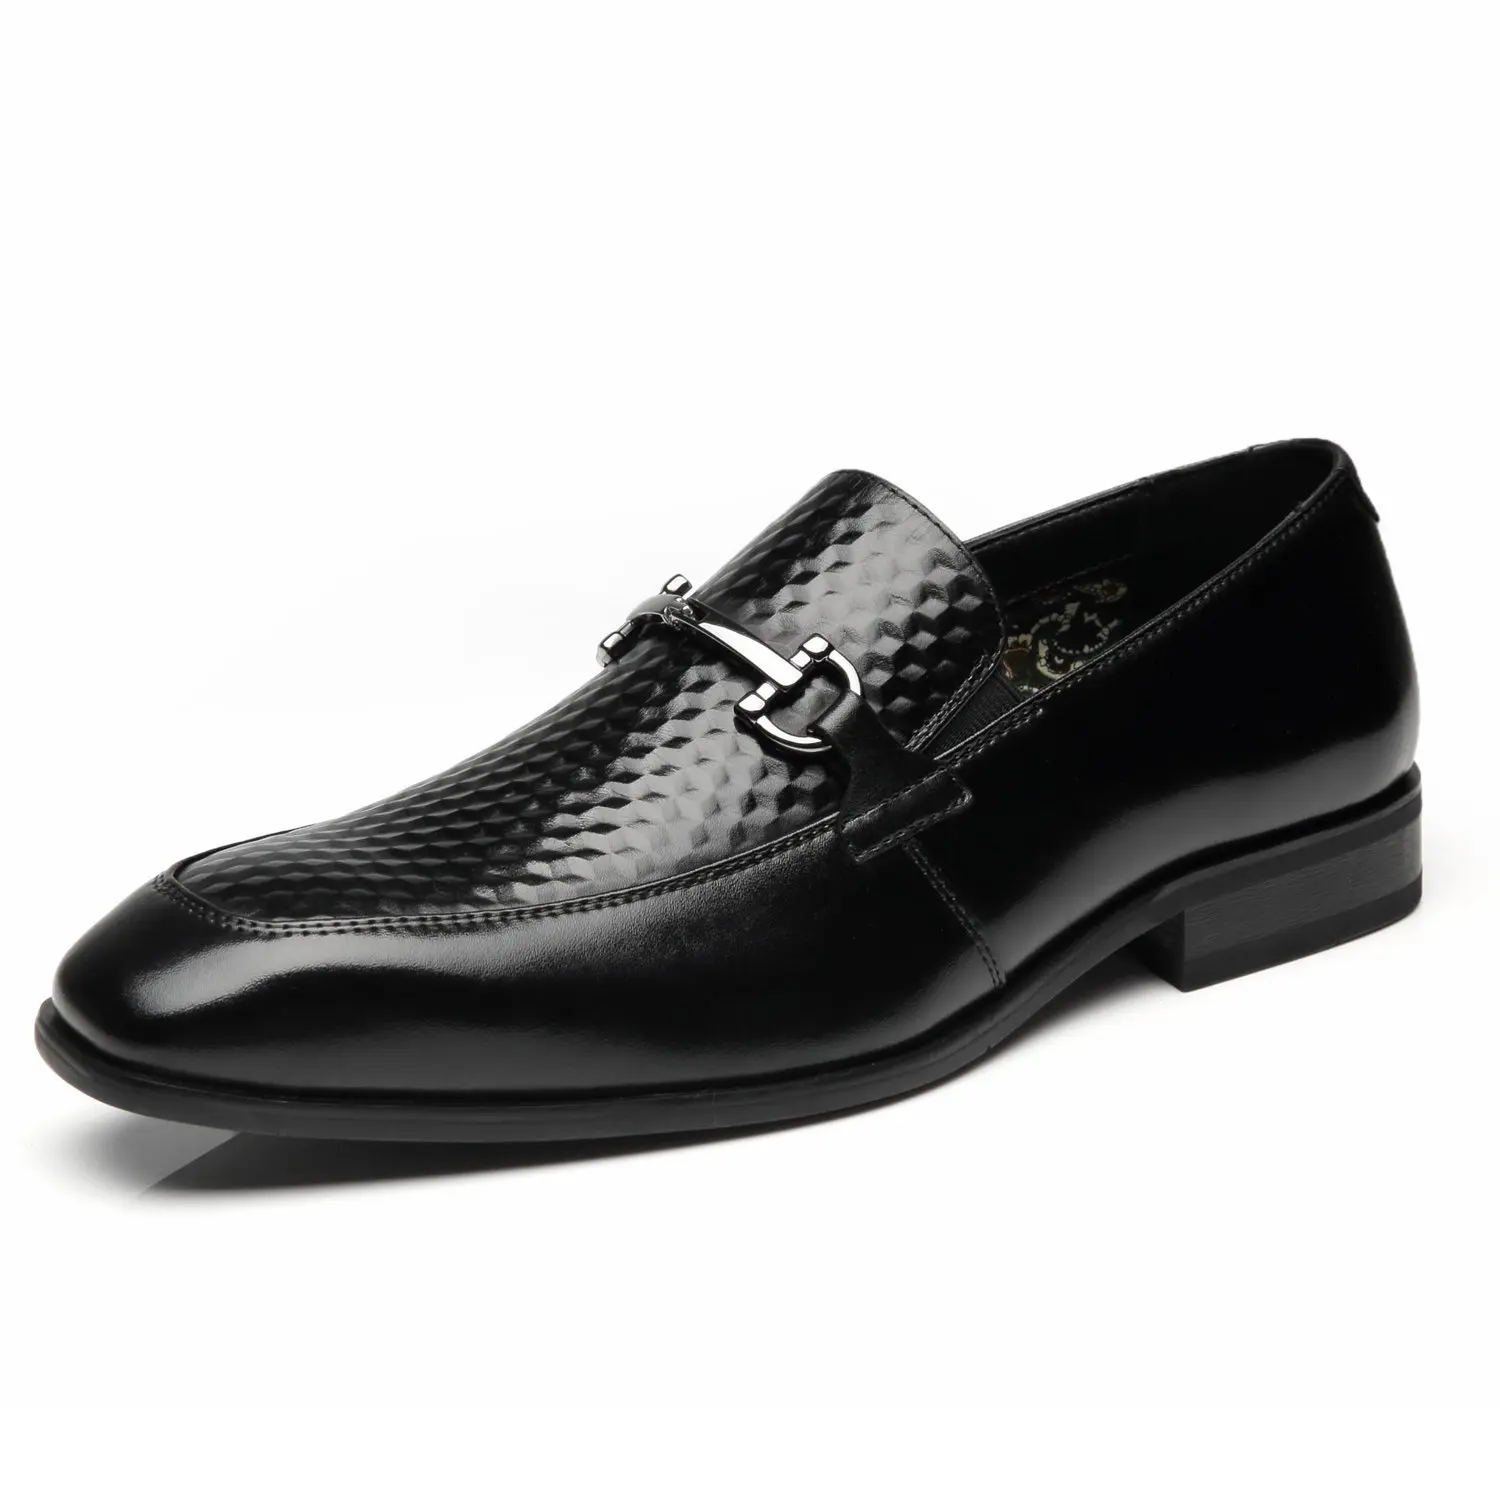 Buy Rockport Mens Loafer Dress Shoes K57539 Lesner Black Leather in ...